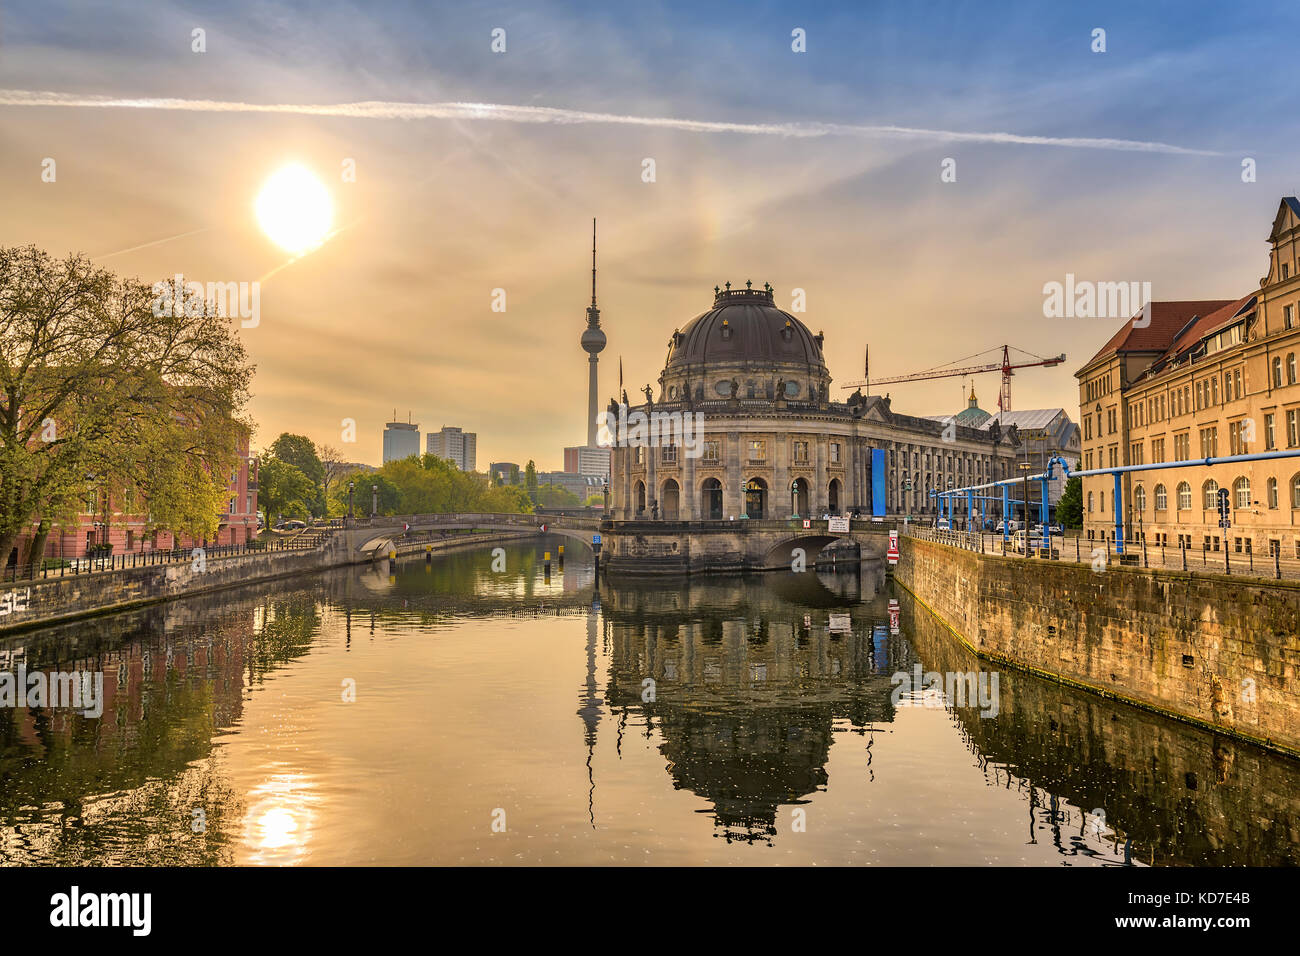 Amanecer el horizonte de la ciudad de Berlín, en la isla de los museos y la berlina torre de televisión, Berlín, Alemania Foto de stock